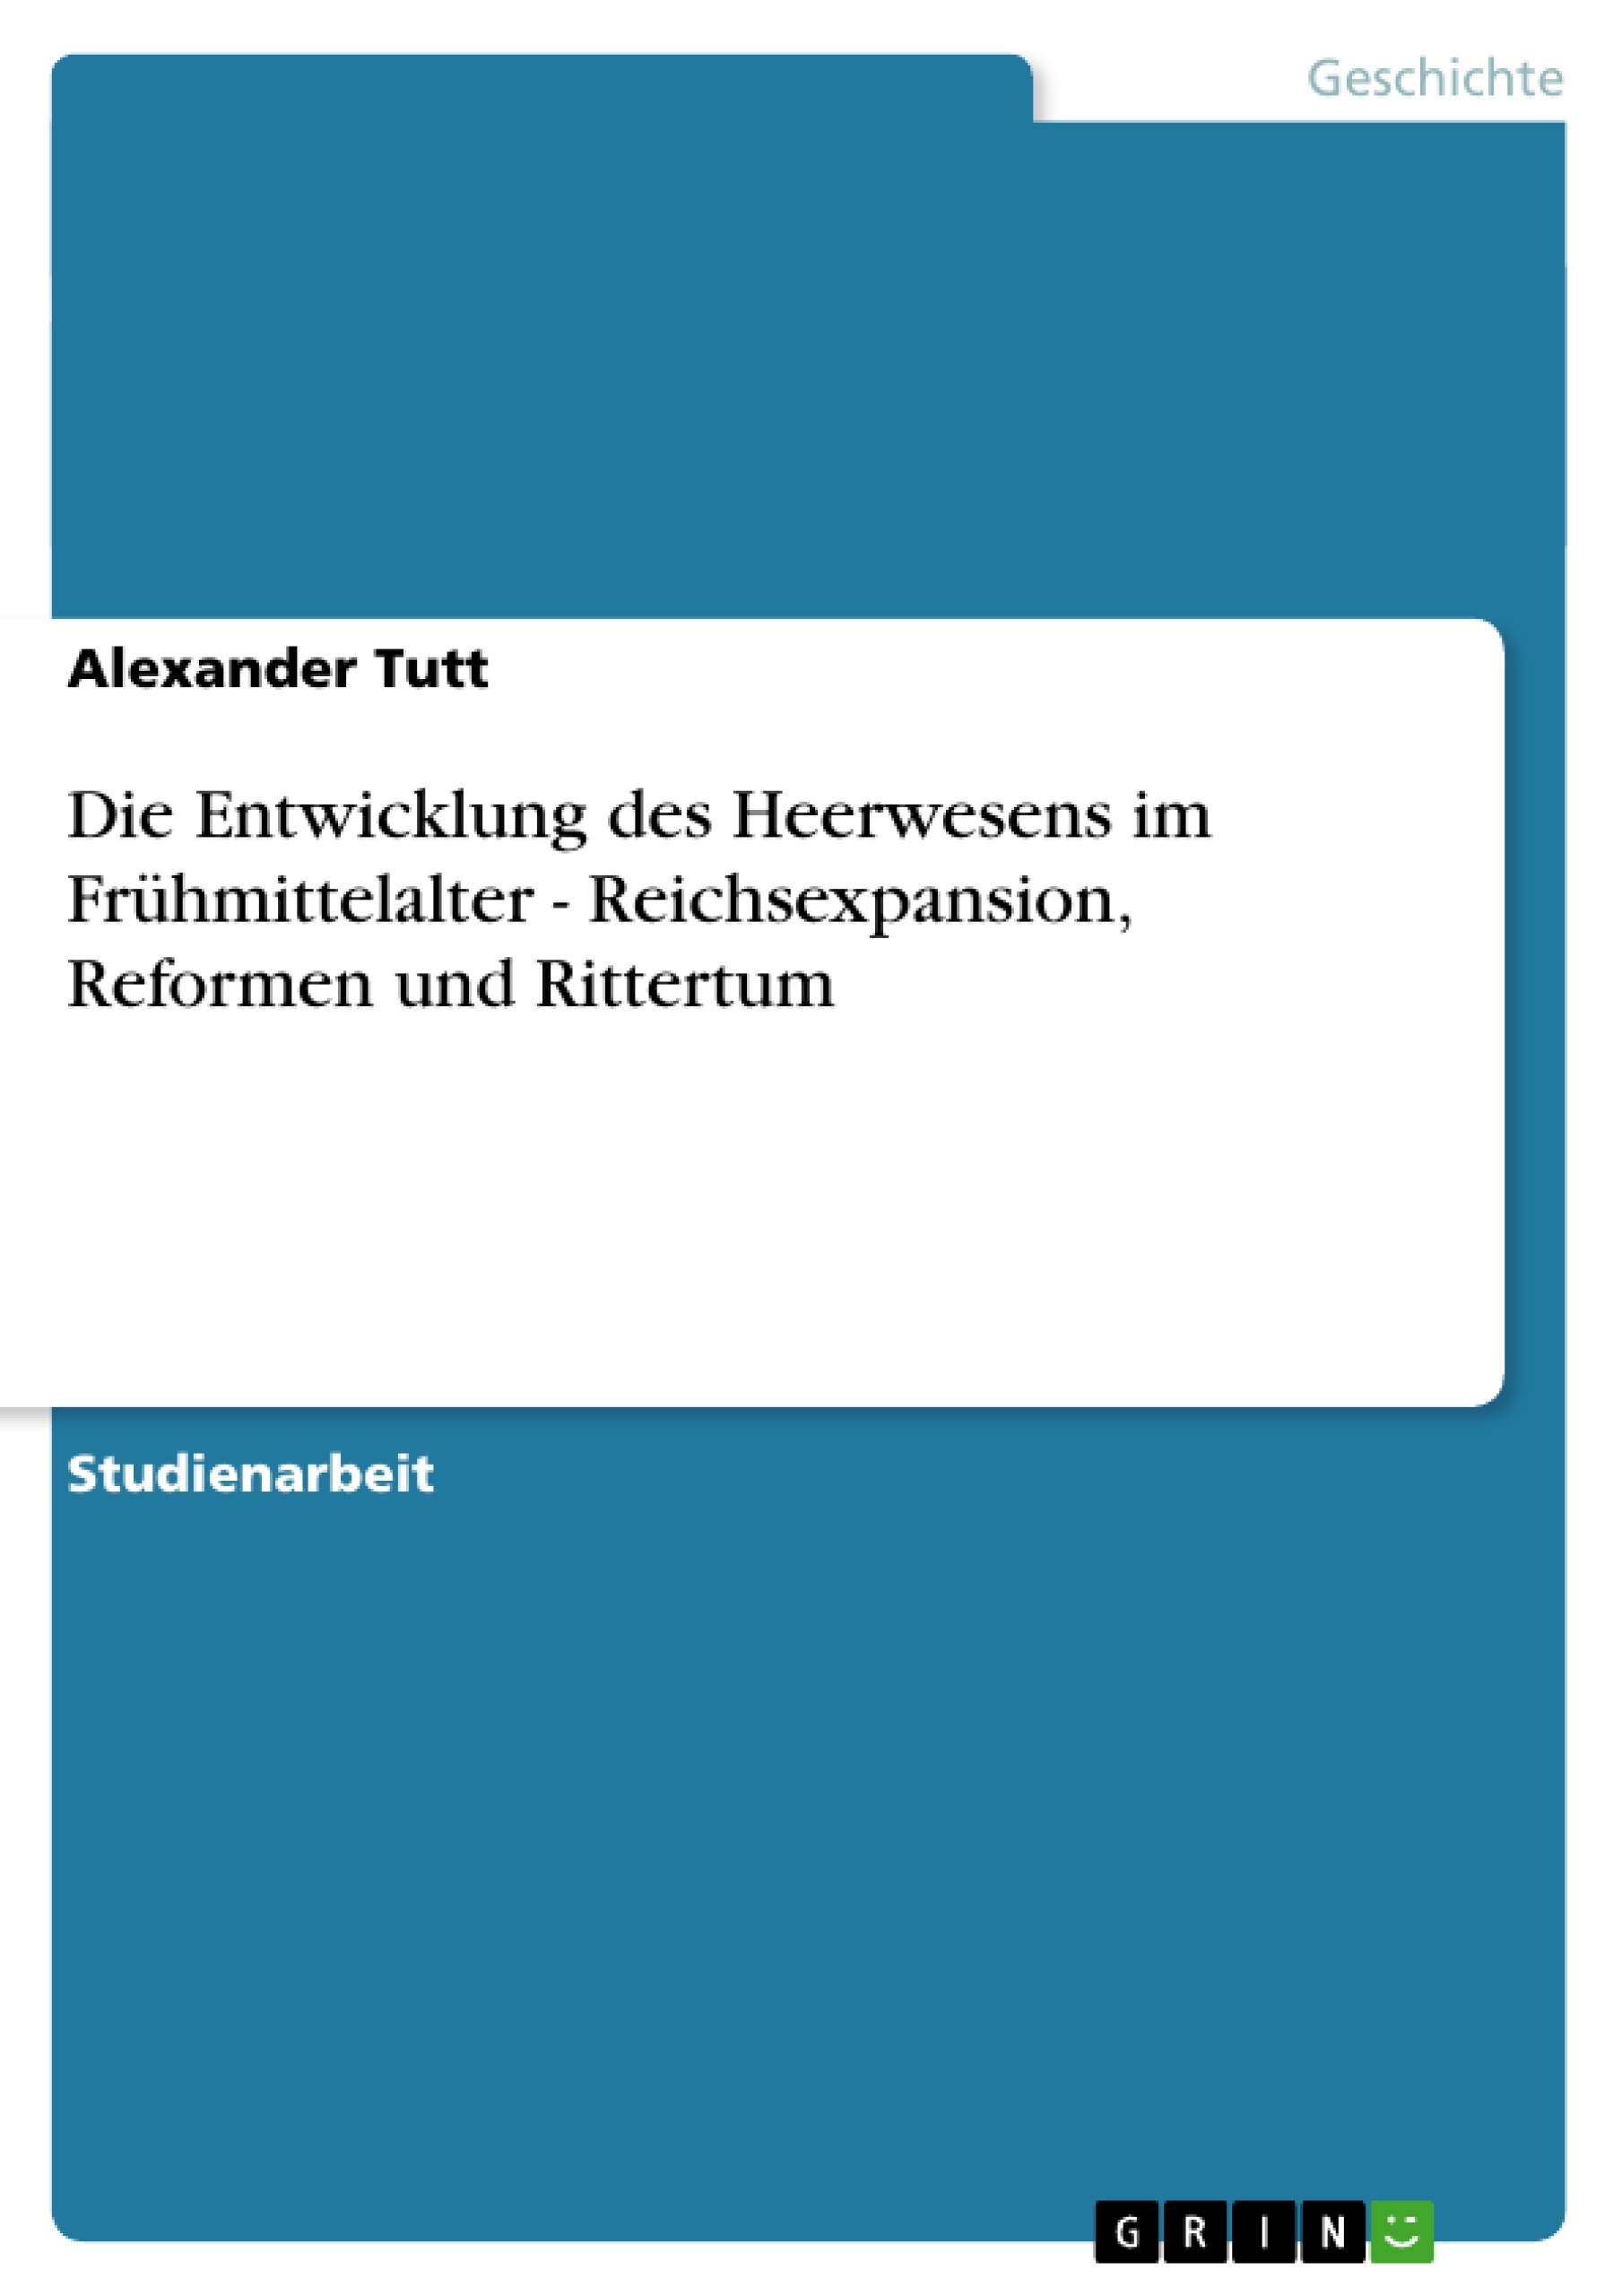 Título: Die Entwicklung des Heerwesens im Frühmittelalter - Reichsexpansion, Reformen und Rittertum